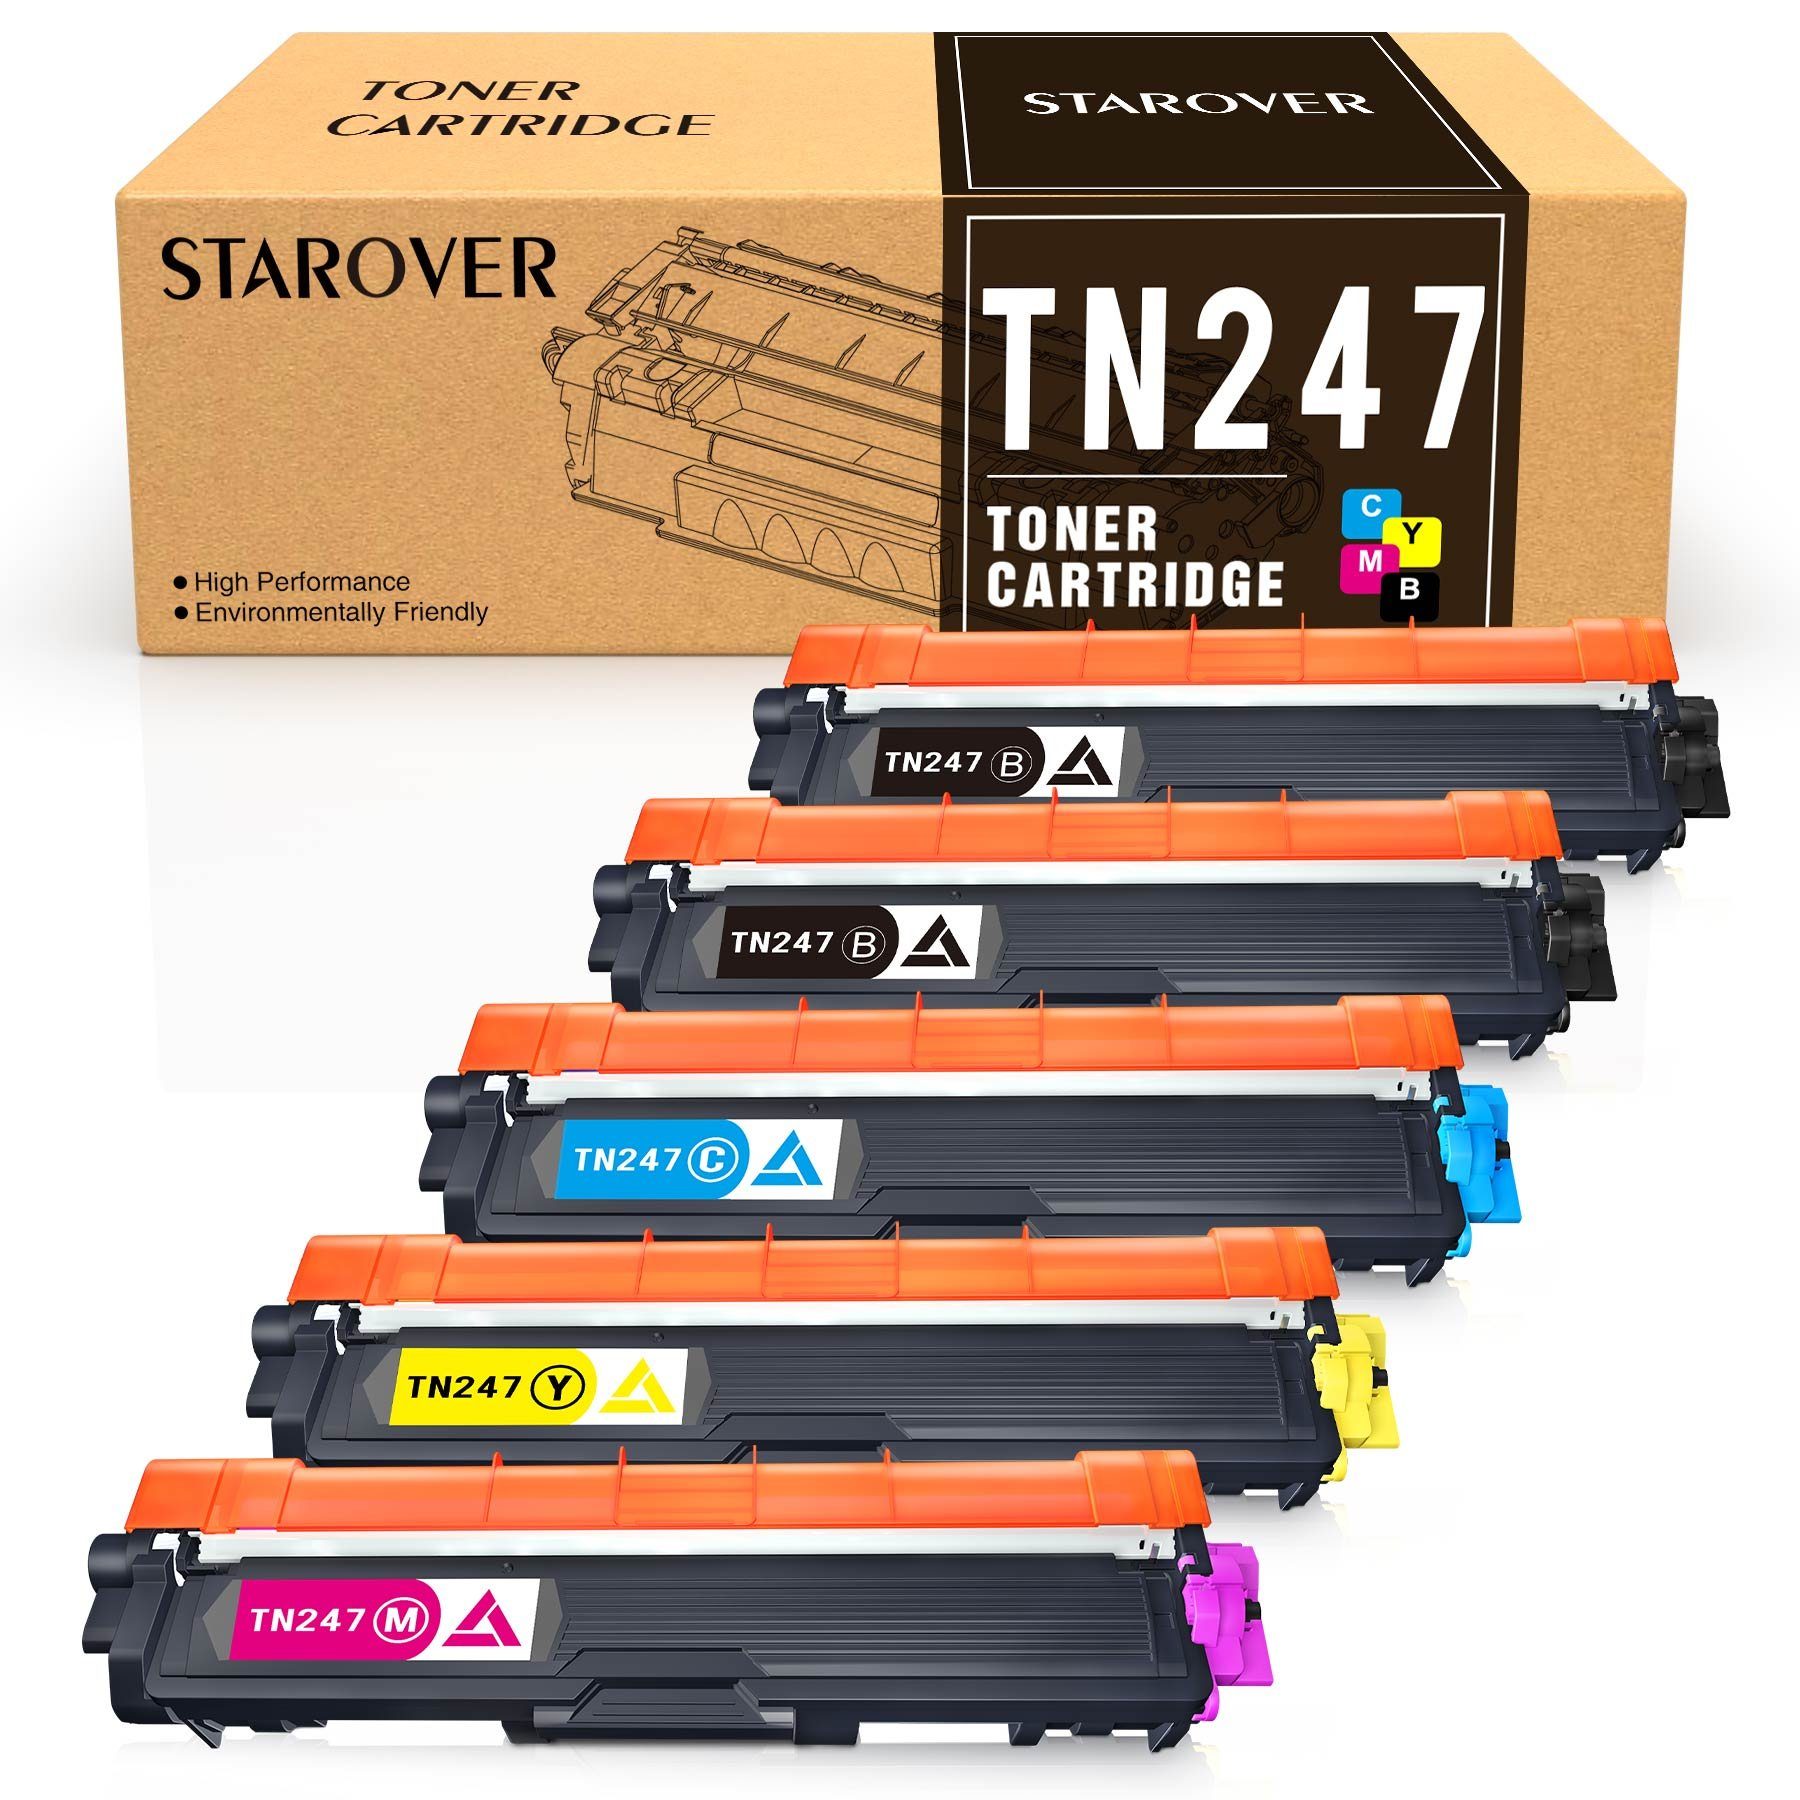 STAROVER Tonerkartusche 5er-set Kompatible für Brother TN243 TN247 Multipack, (Kompatibel für Brother TN-247 TN 243 HL-L3230CDW HL-L3210CW), HL-L3270CDW MFC-L3710CW MFC-L3730CDN L3510CDW